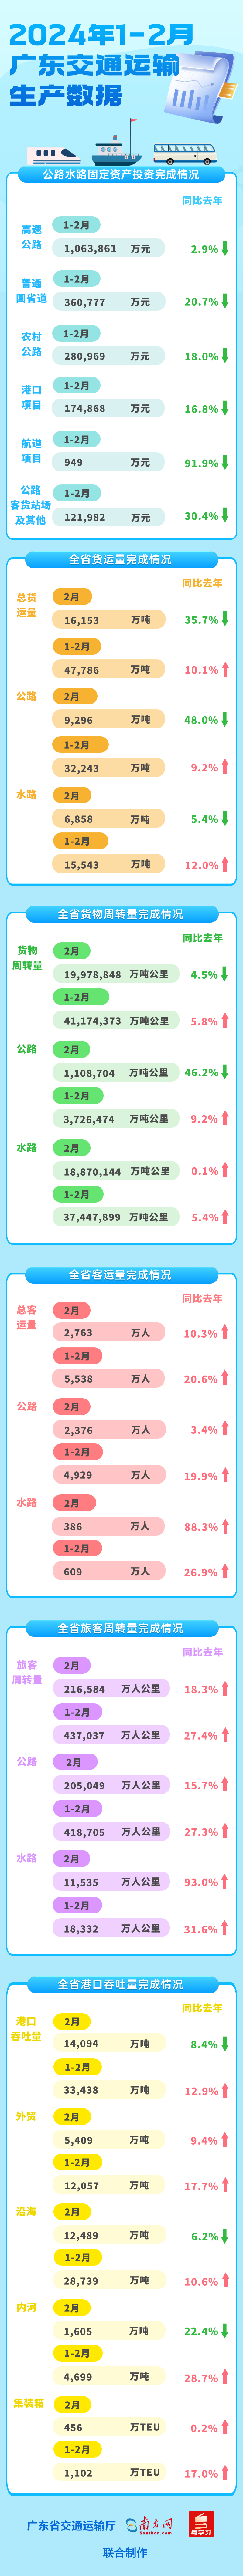 2024年2月广东交通基建投资 运输生产数据1.png